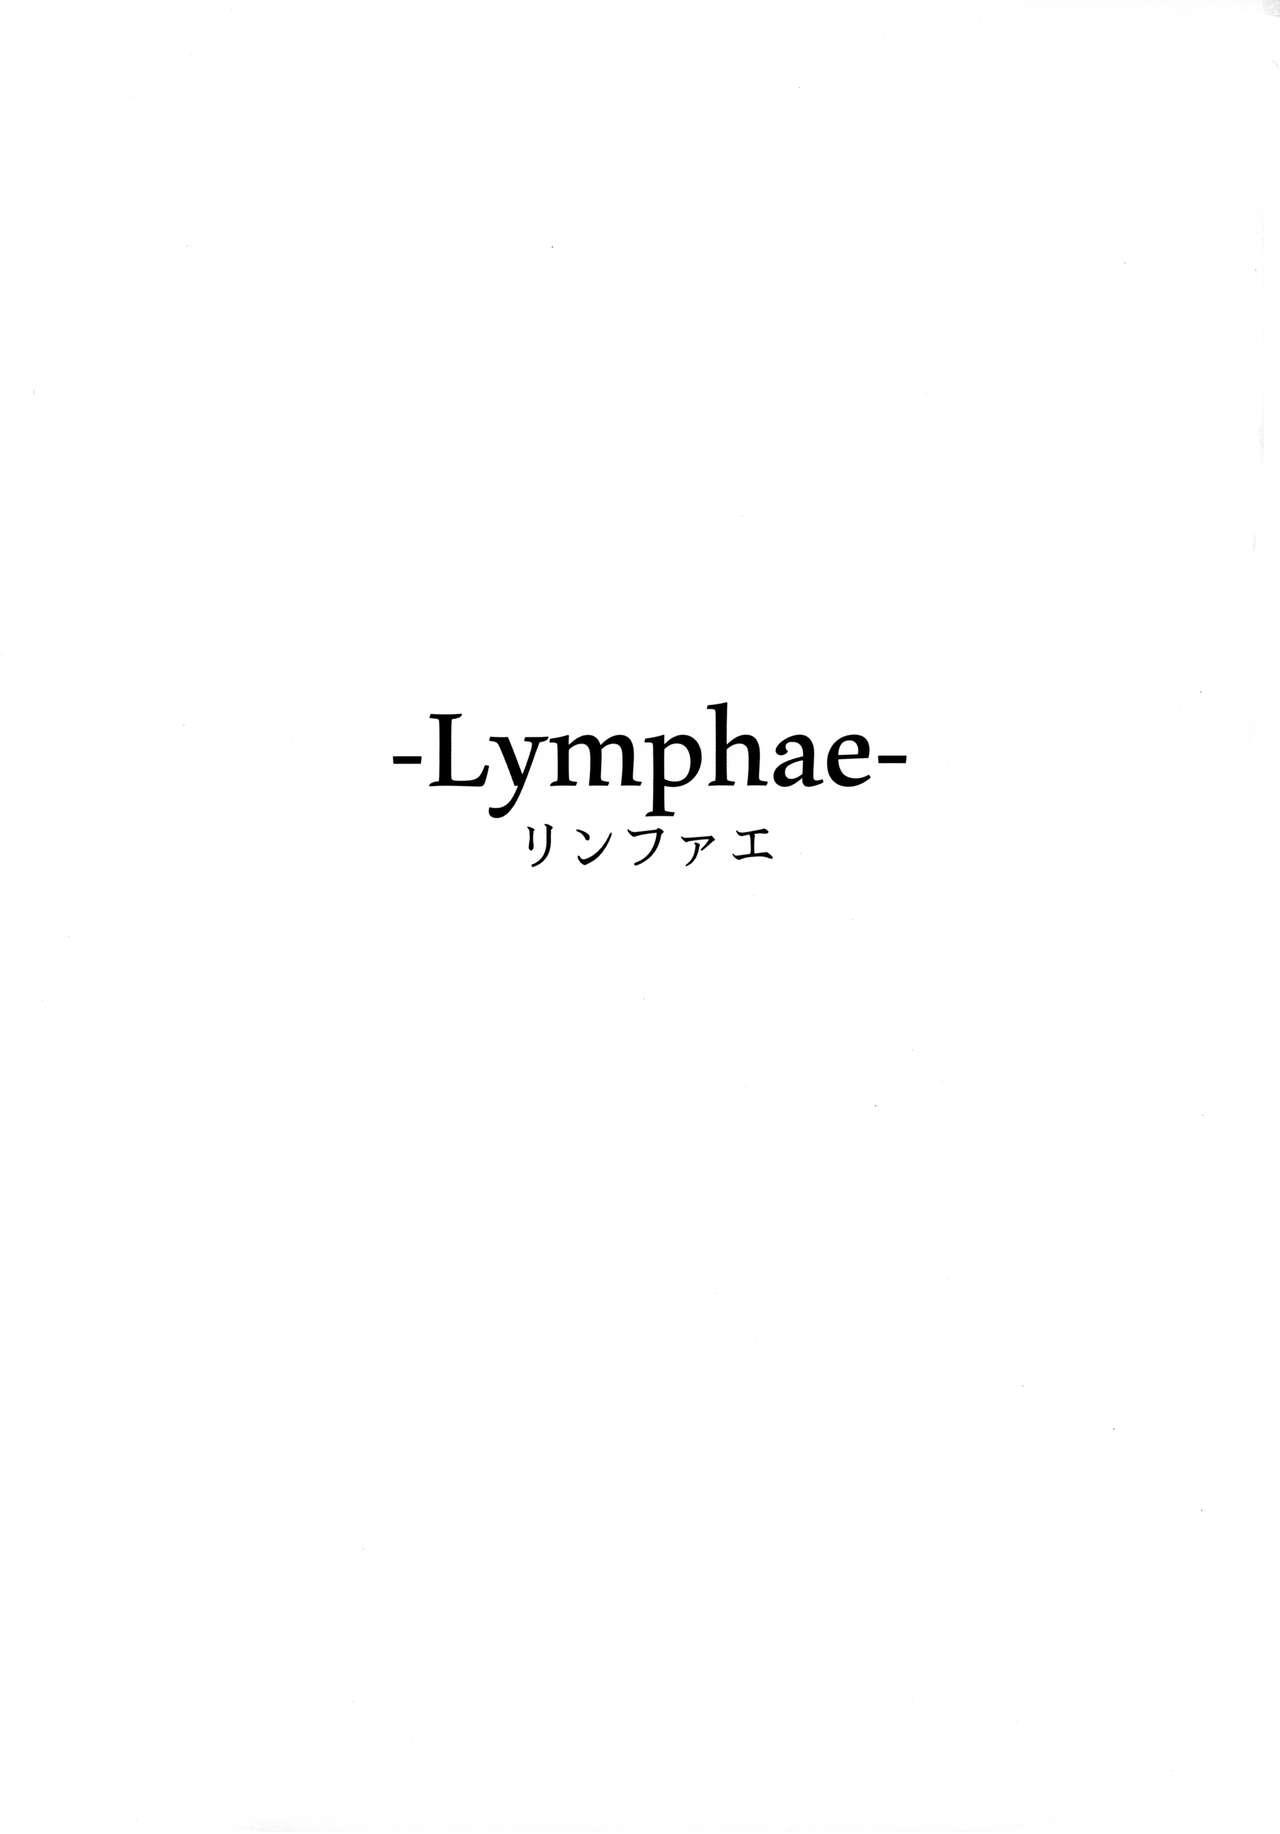 Lymphae 1